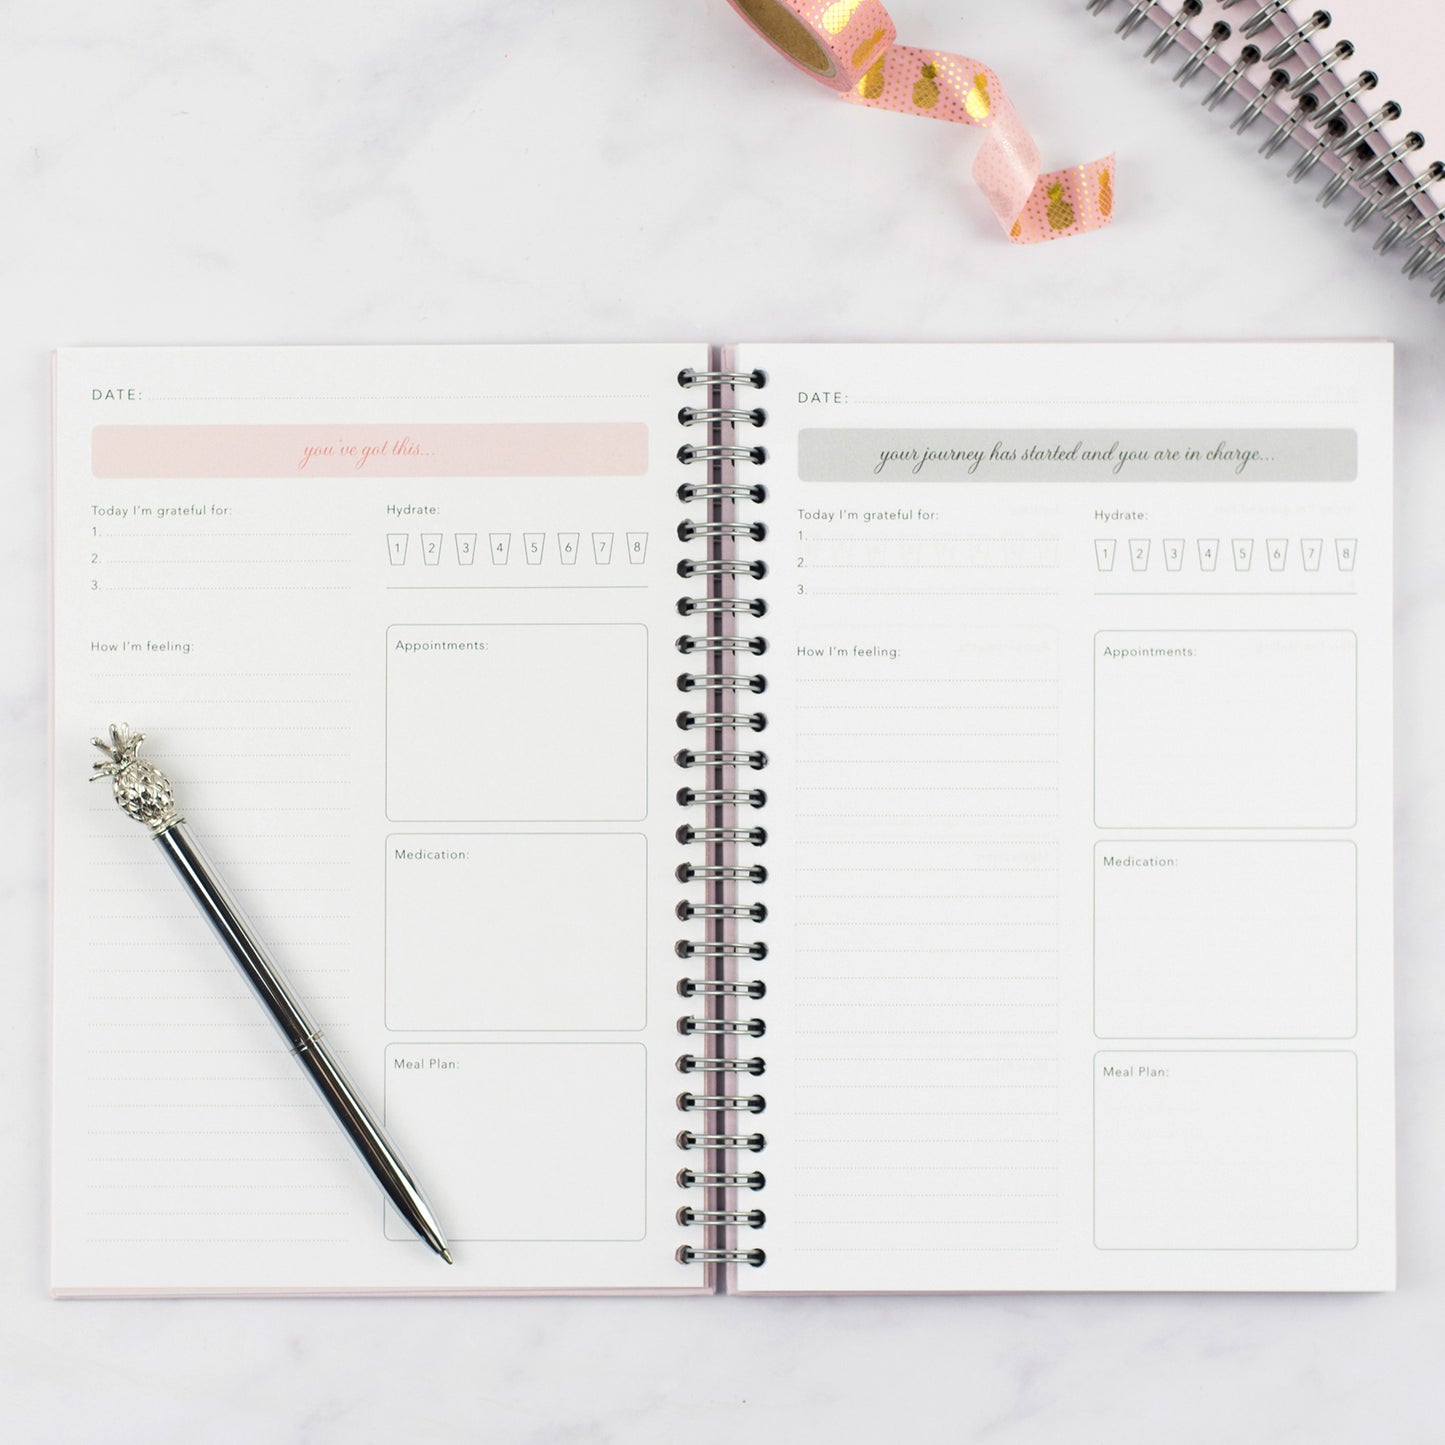 IVF Planner / Personalised IVF Journal - Pink Polka Dot